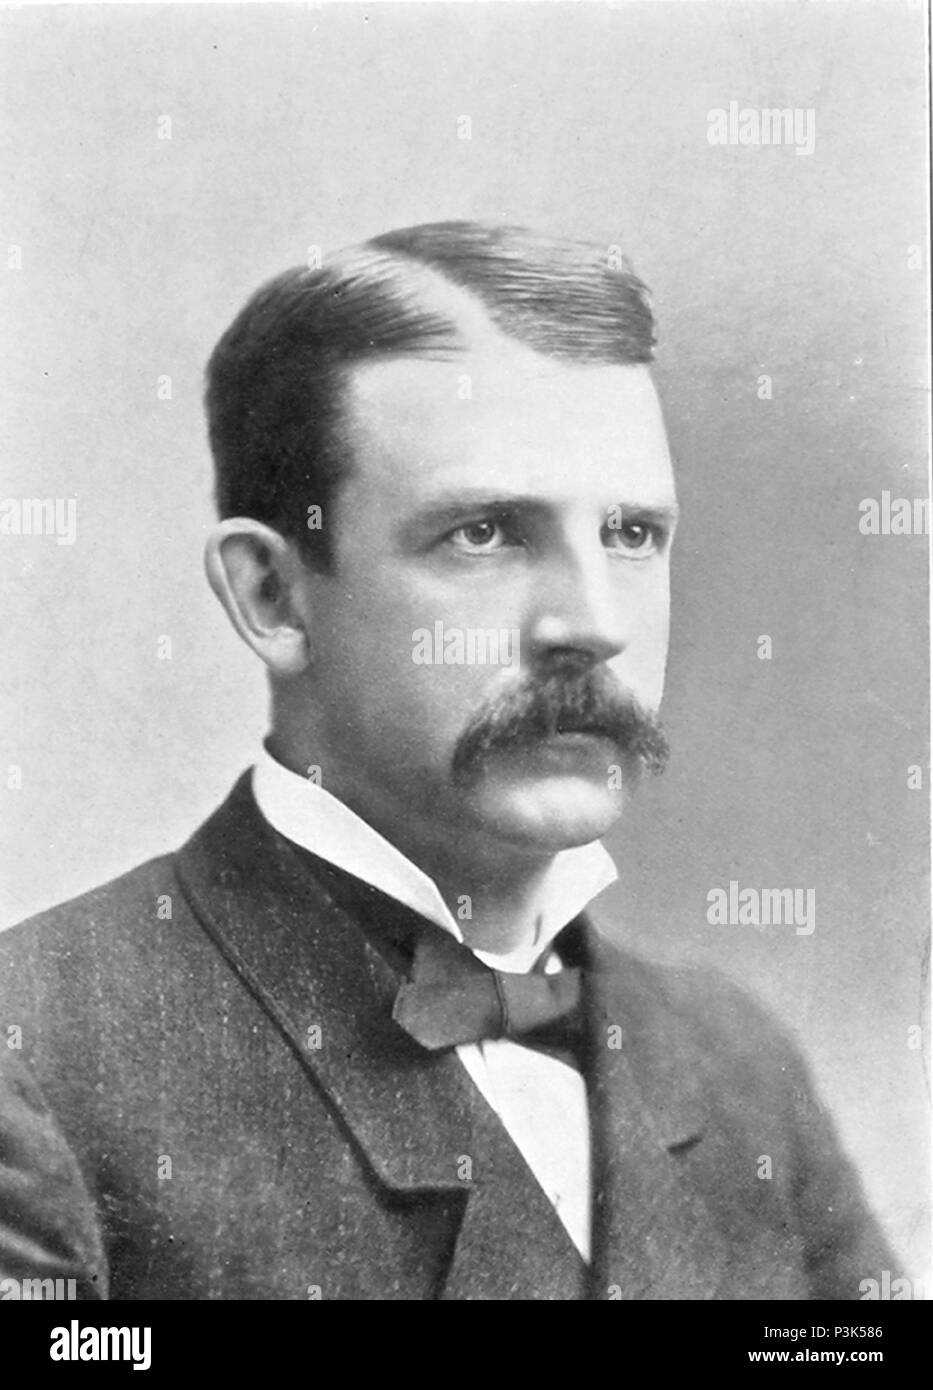 Albert Goodwill Spalding (1849-1915) amerikanischer Krug, Manager und Executive in den frühen Jahren von professionellen Baseball, und der Mitbegründer von A.G. Spalding Sportartikelunternehmen Stockfoto